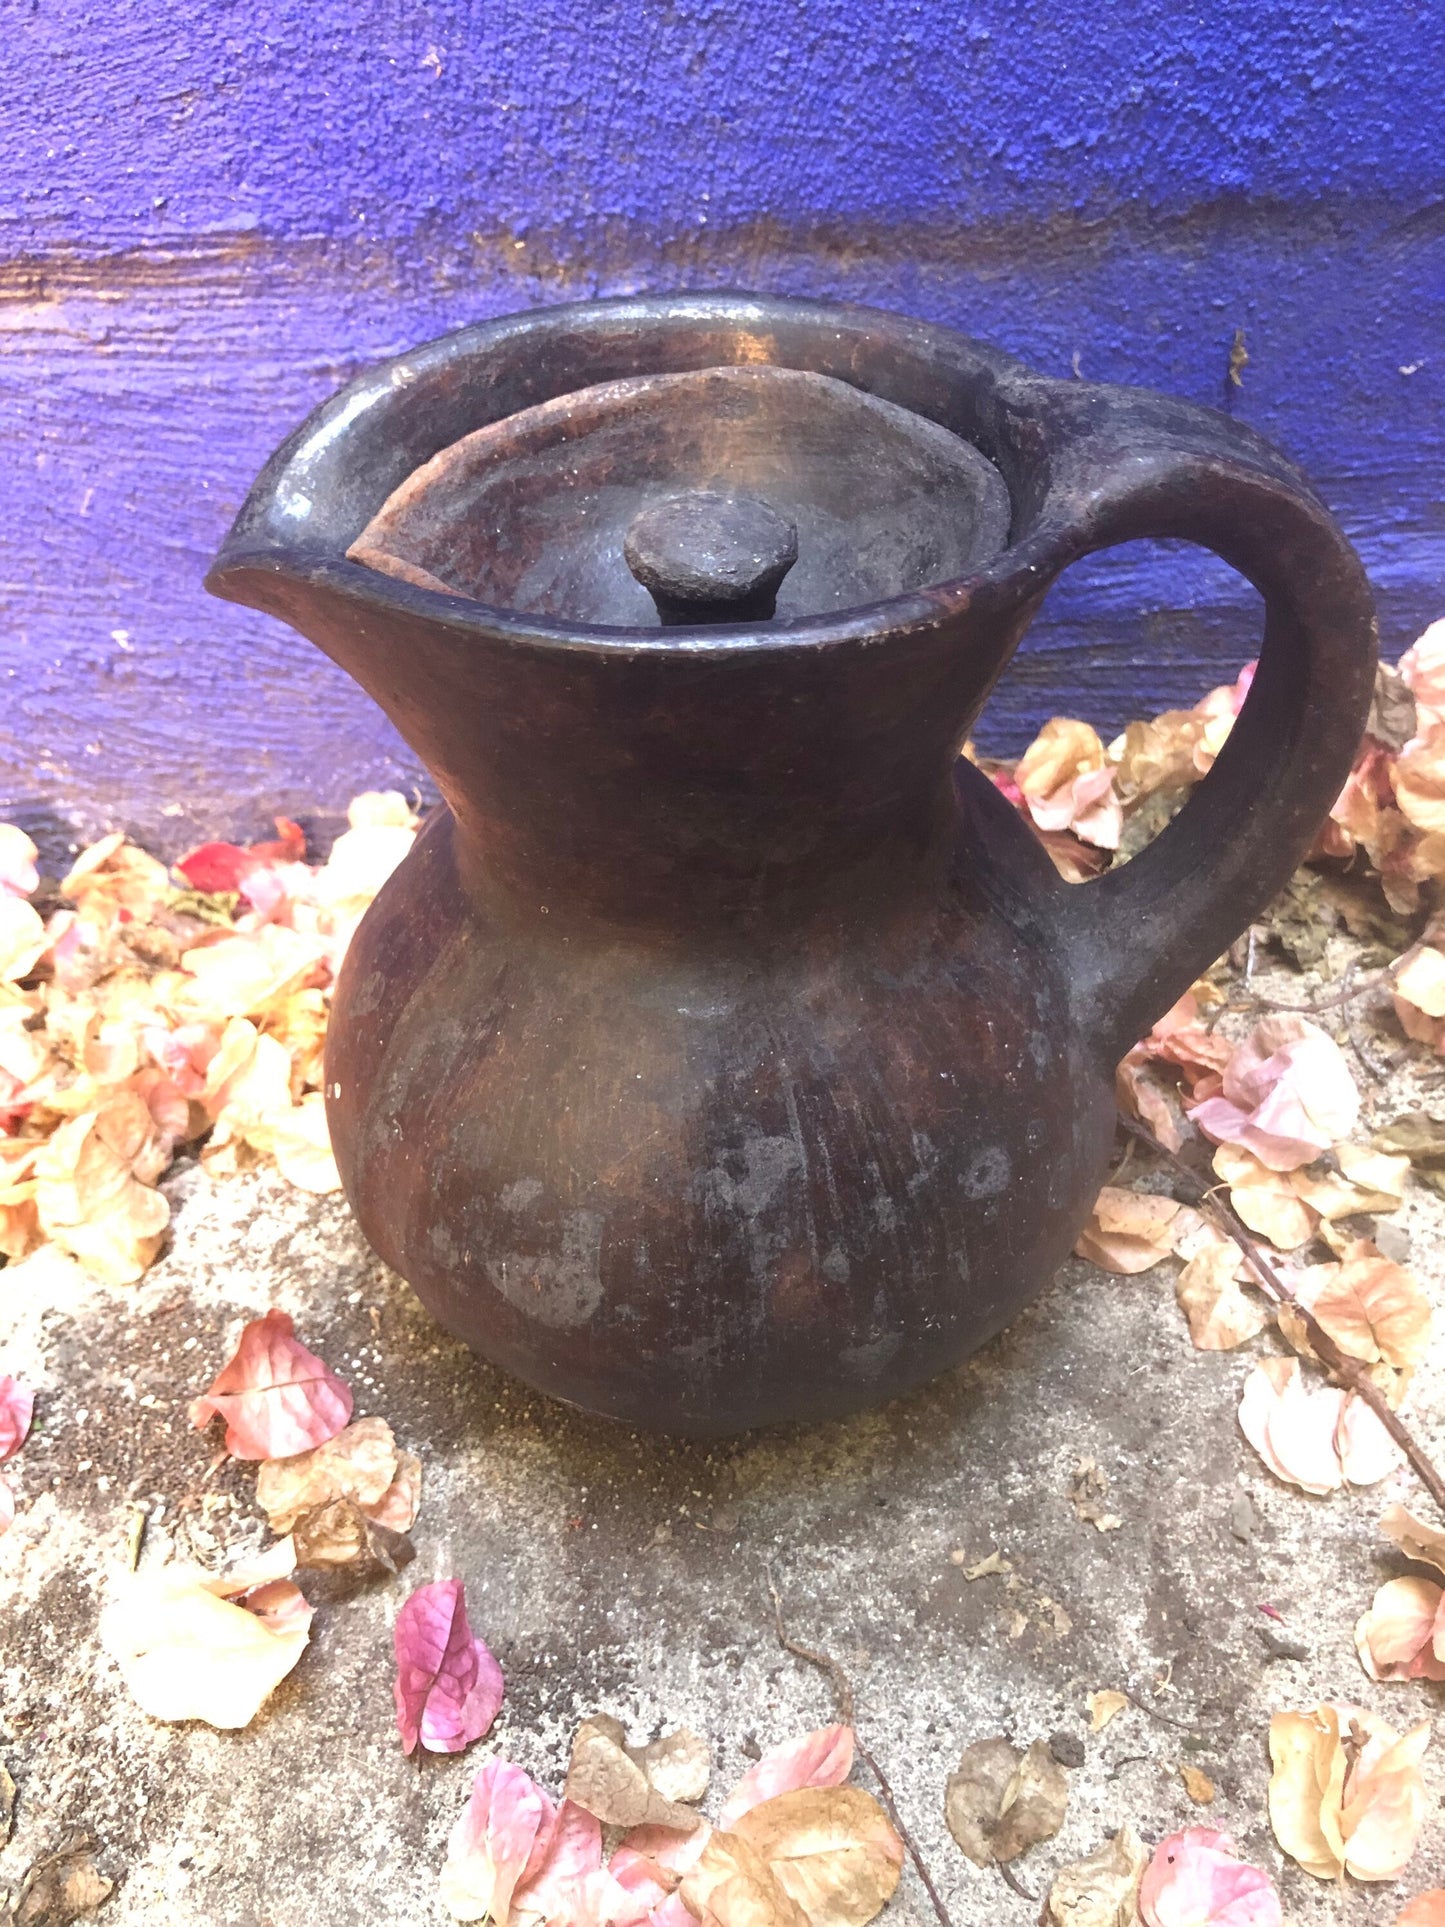 El Salvadoran Black Clay Coffee Jug